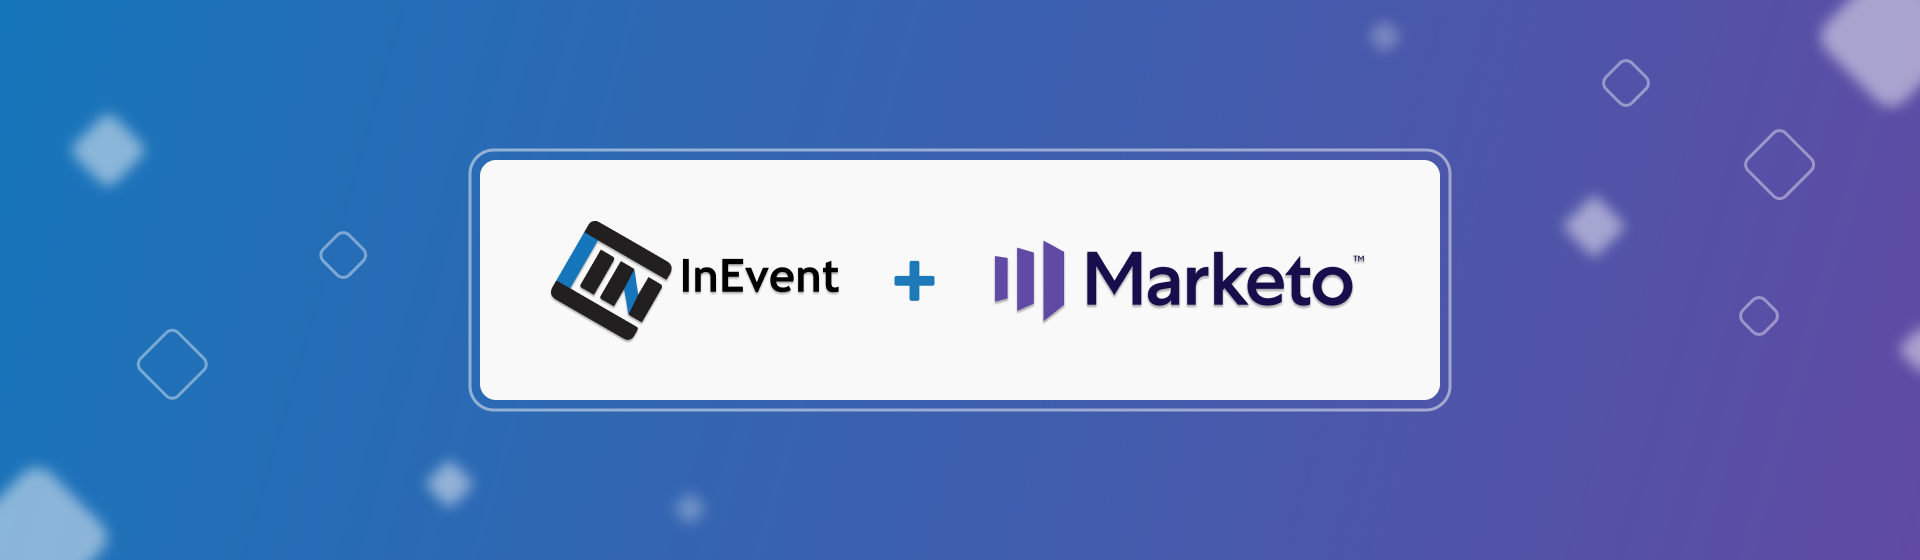 InEvent & Marketo event integration